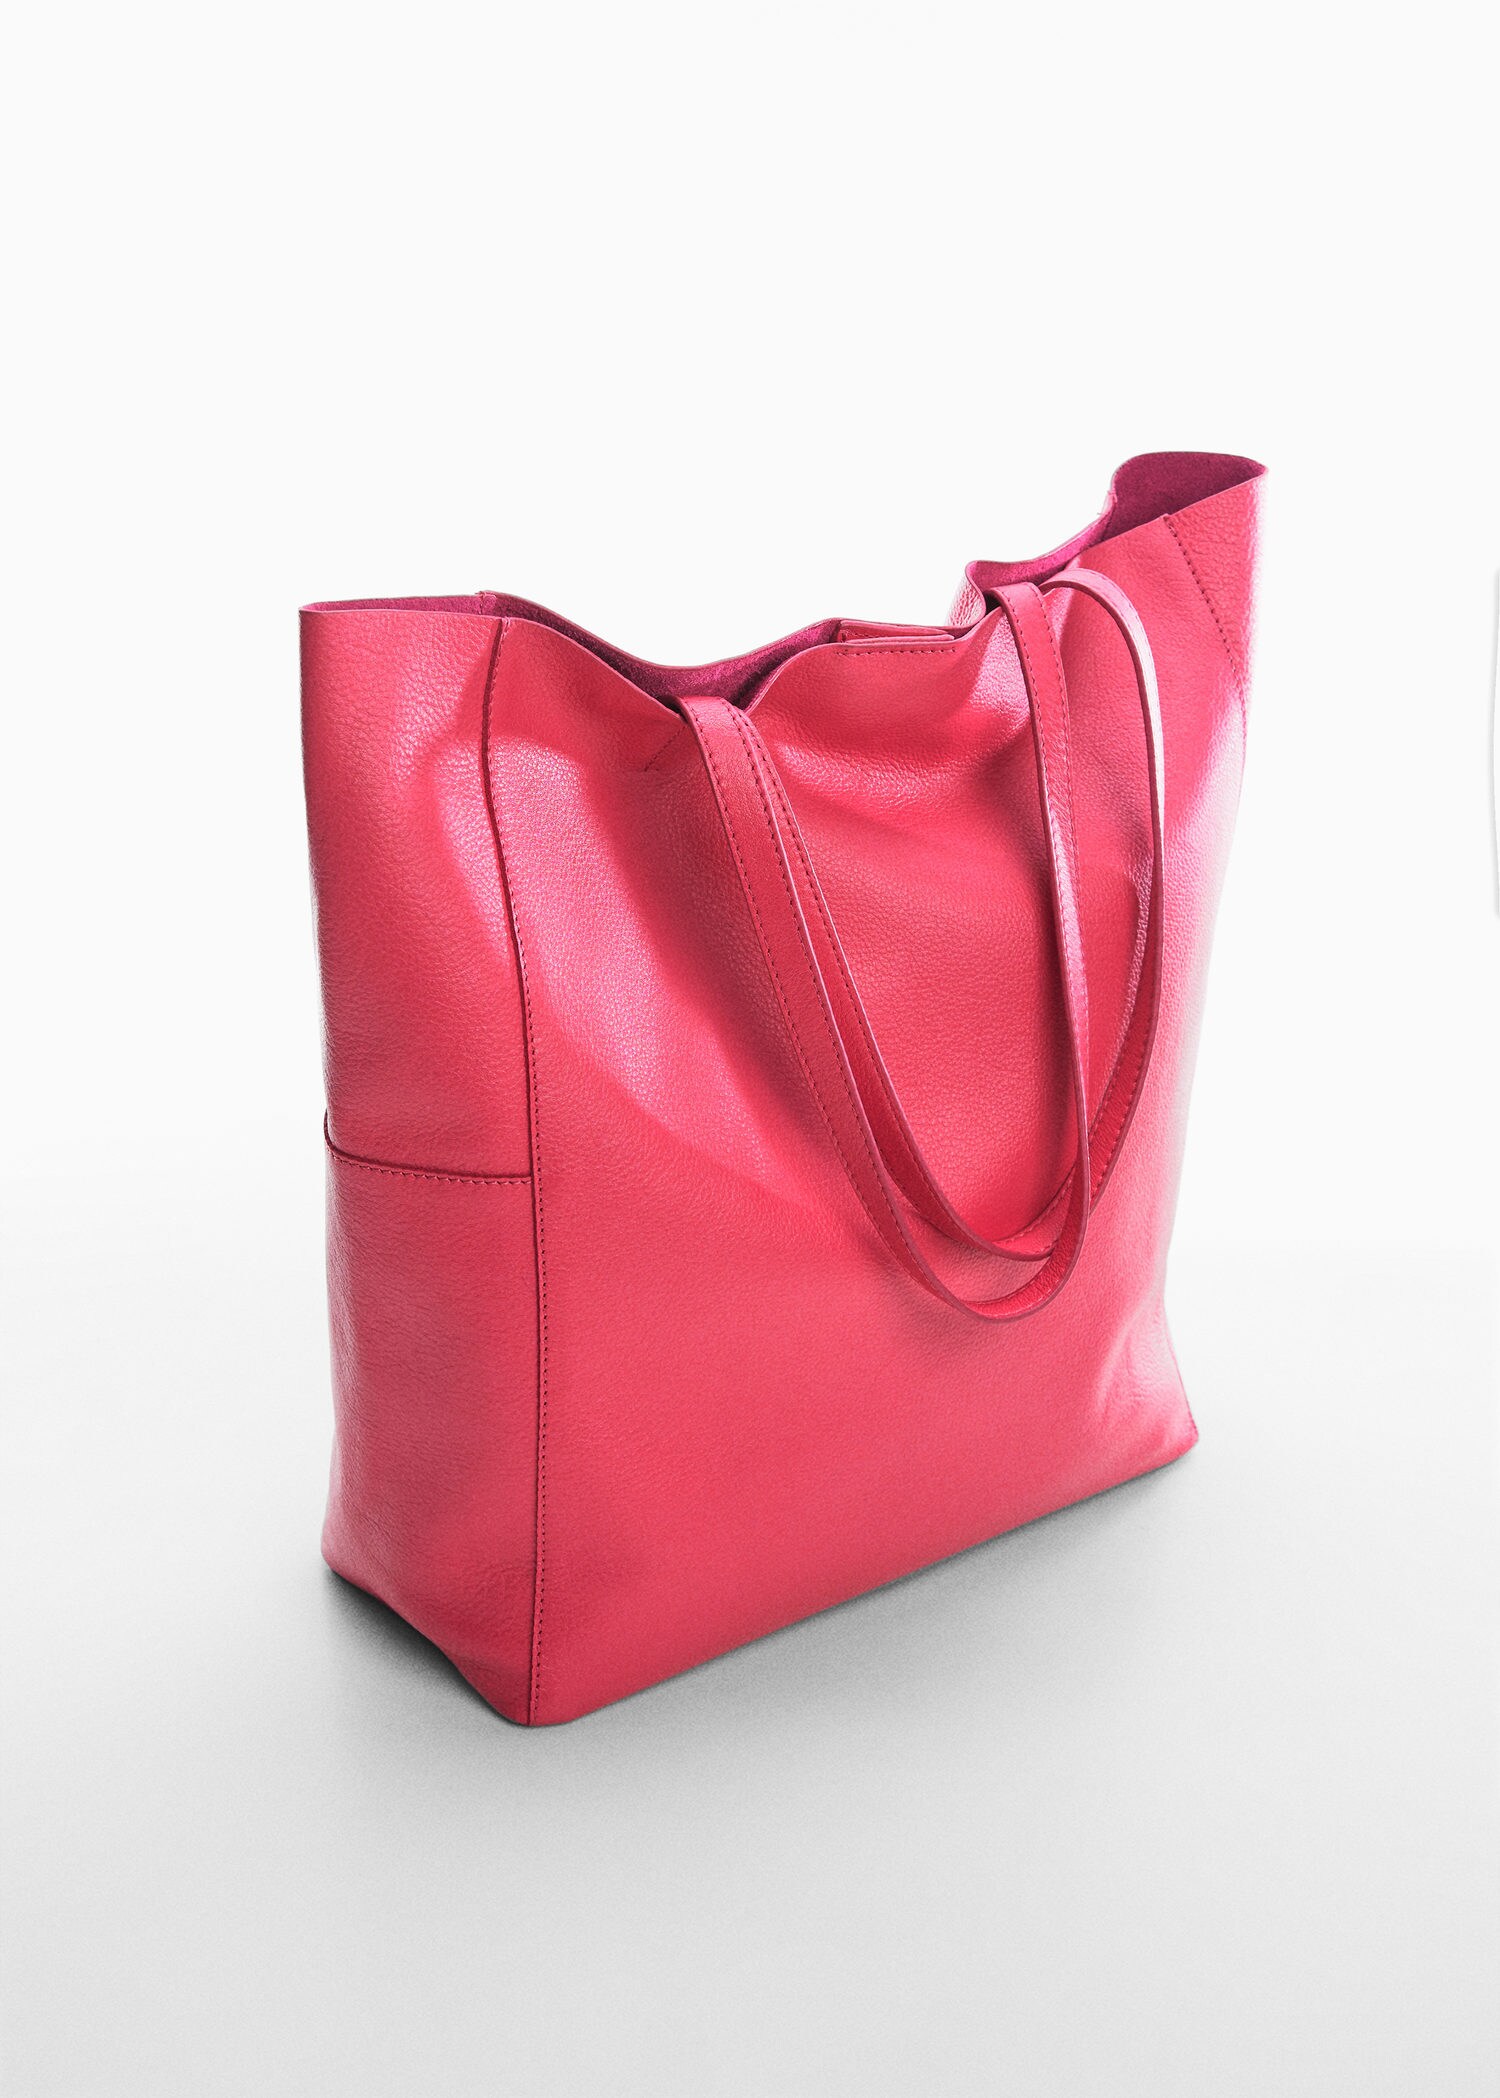 MANGO Hobo Bags & Purses for Women | Nordstrom